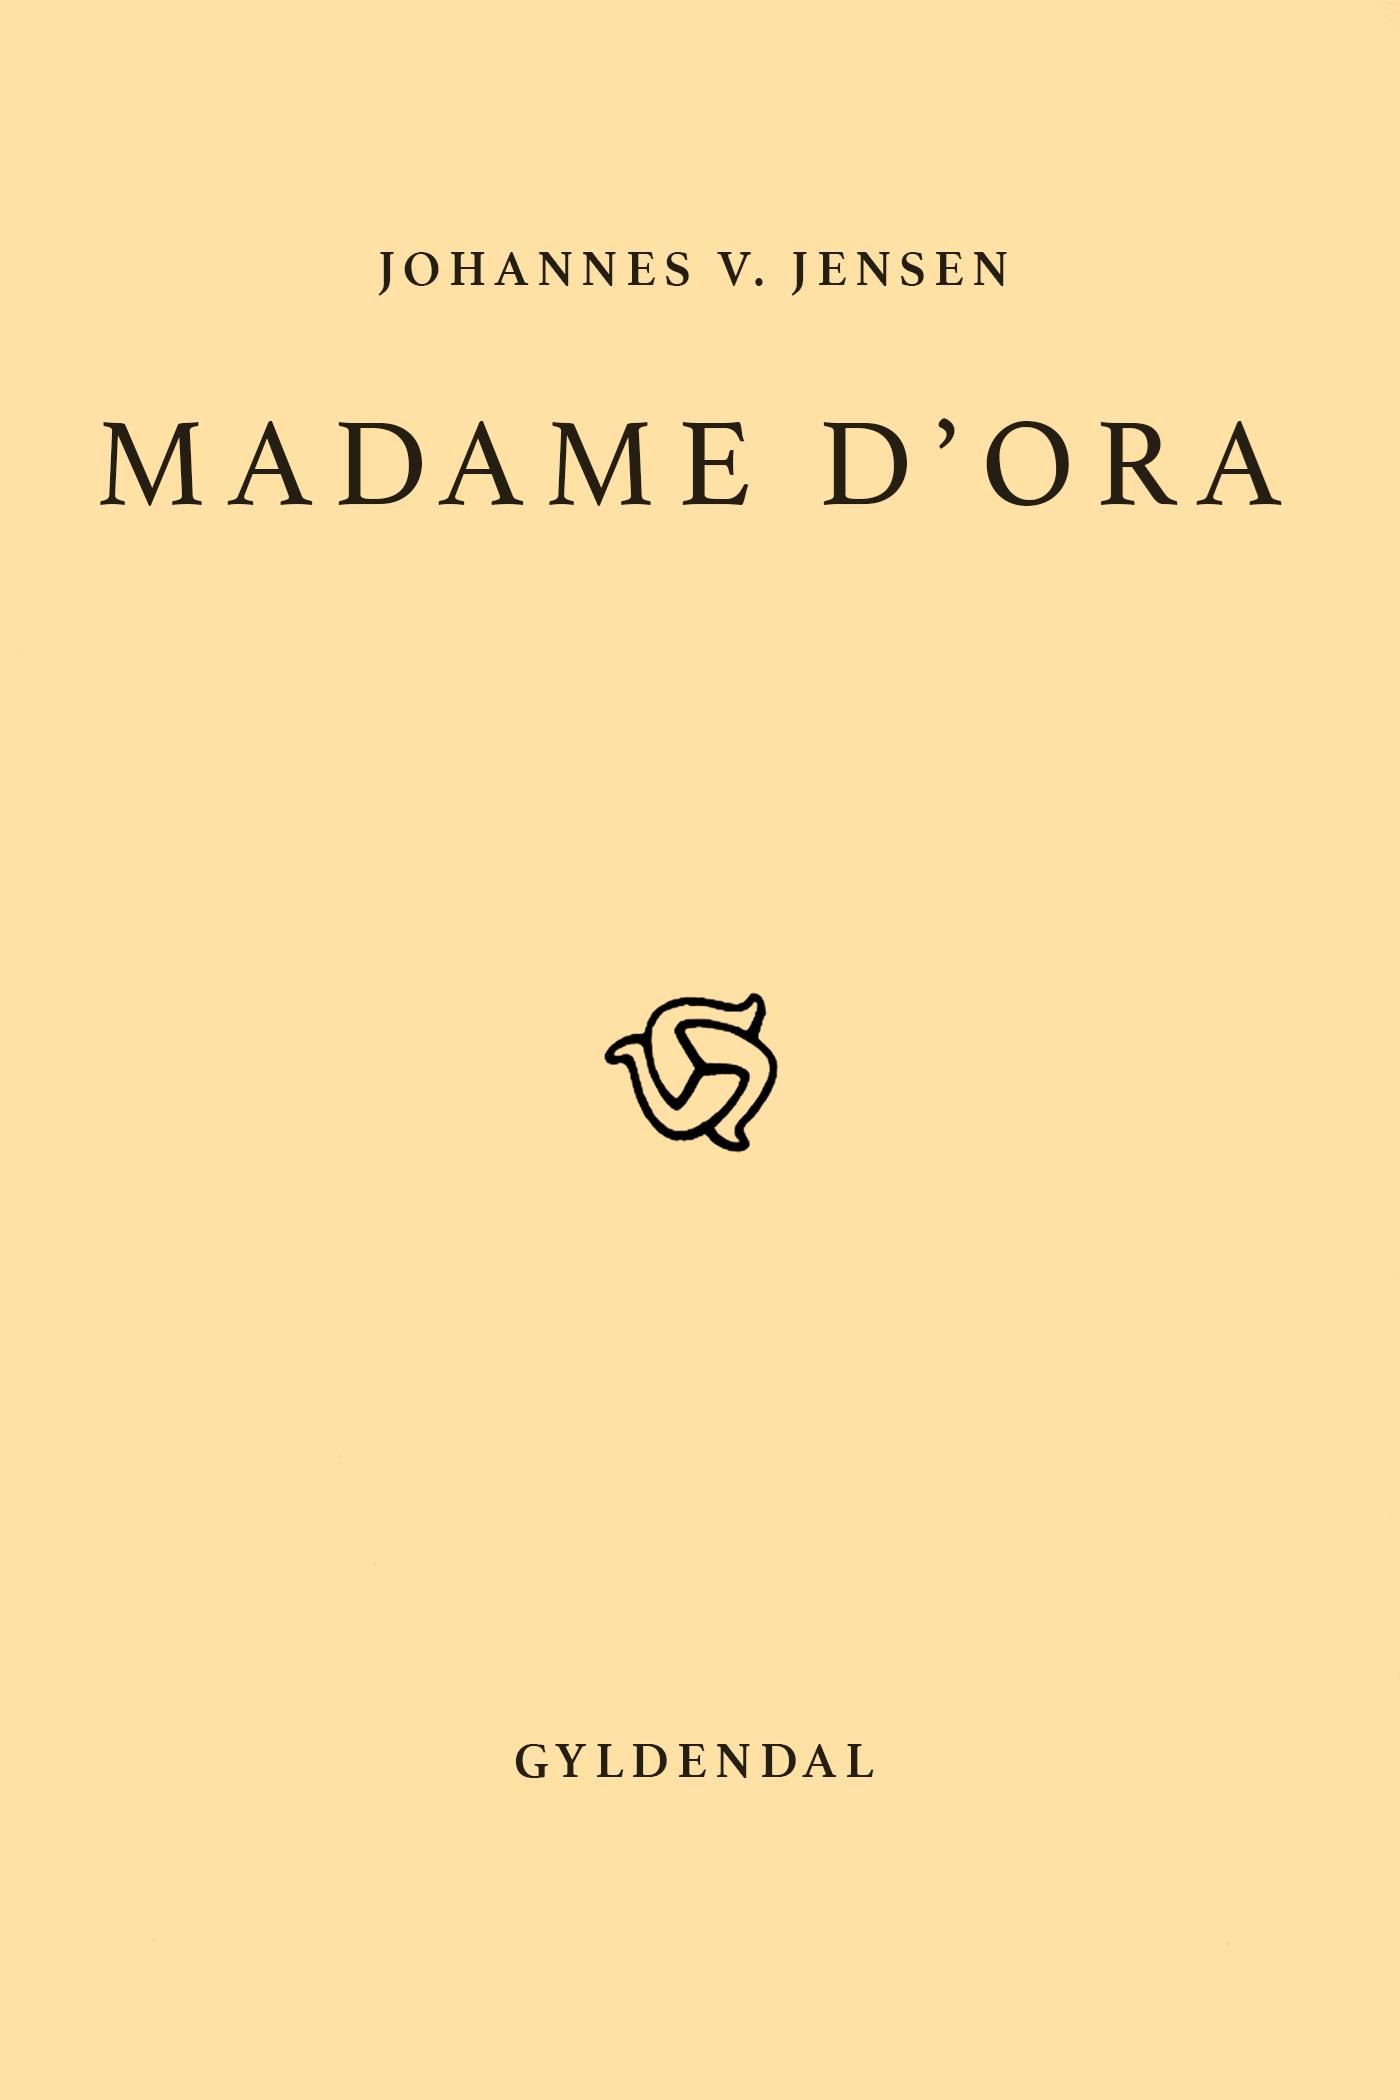 Madame D'Ora, e-bog af Johannes V. Jensen